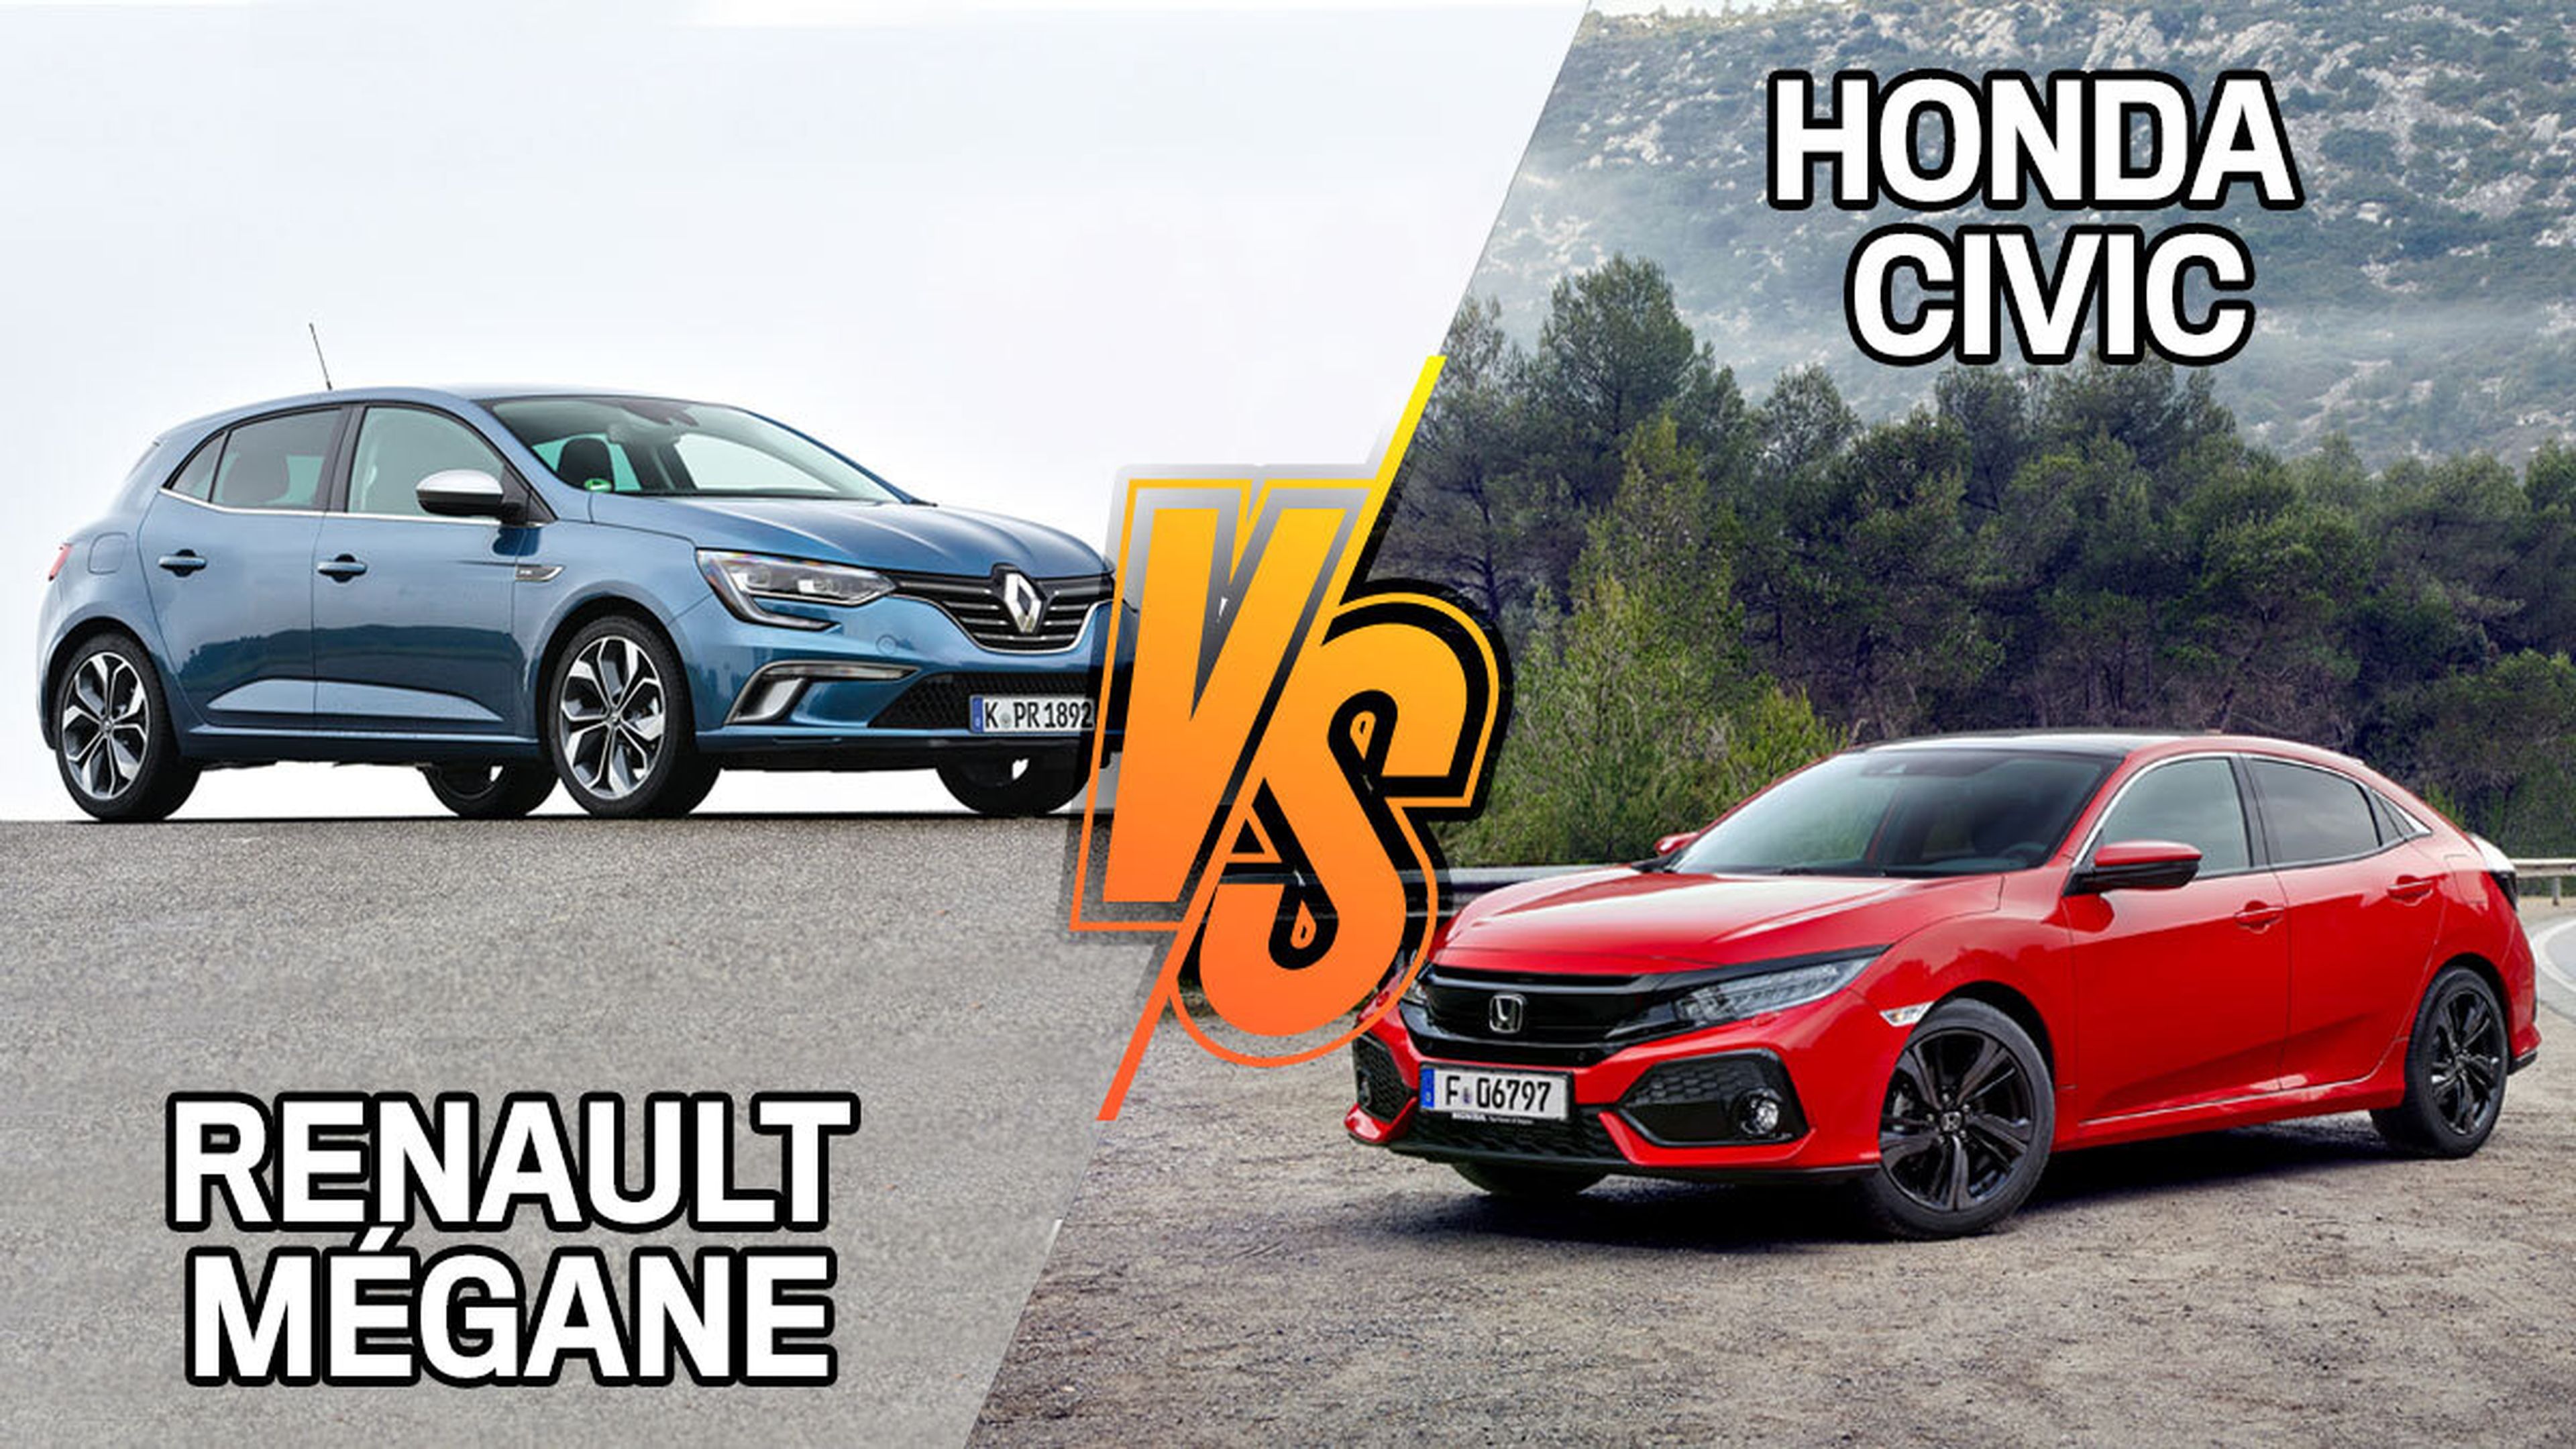 Renault Mégane u Honda Civic de segunda mano: ¿cuál es más barato?